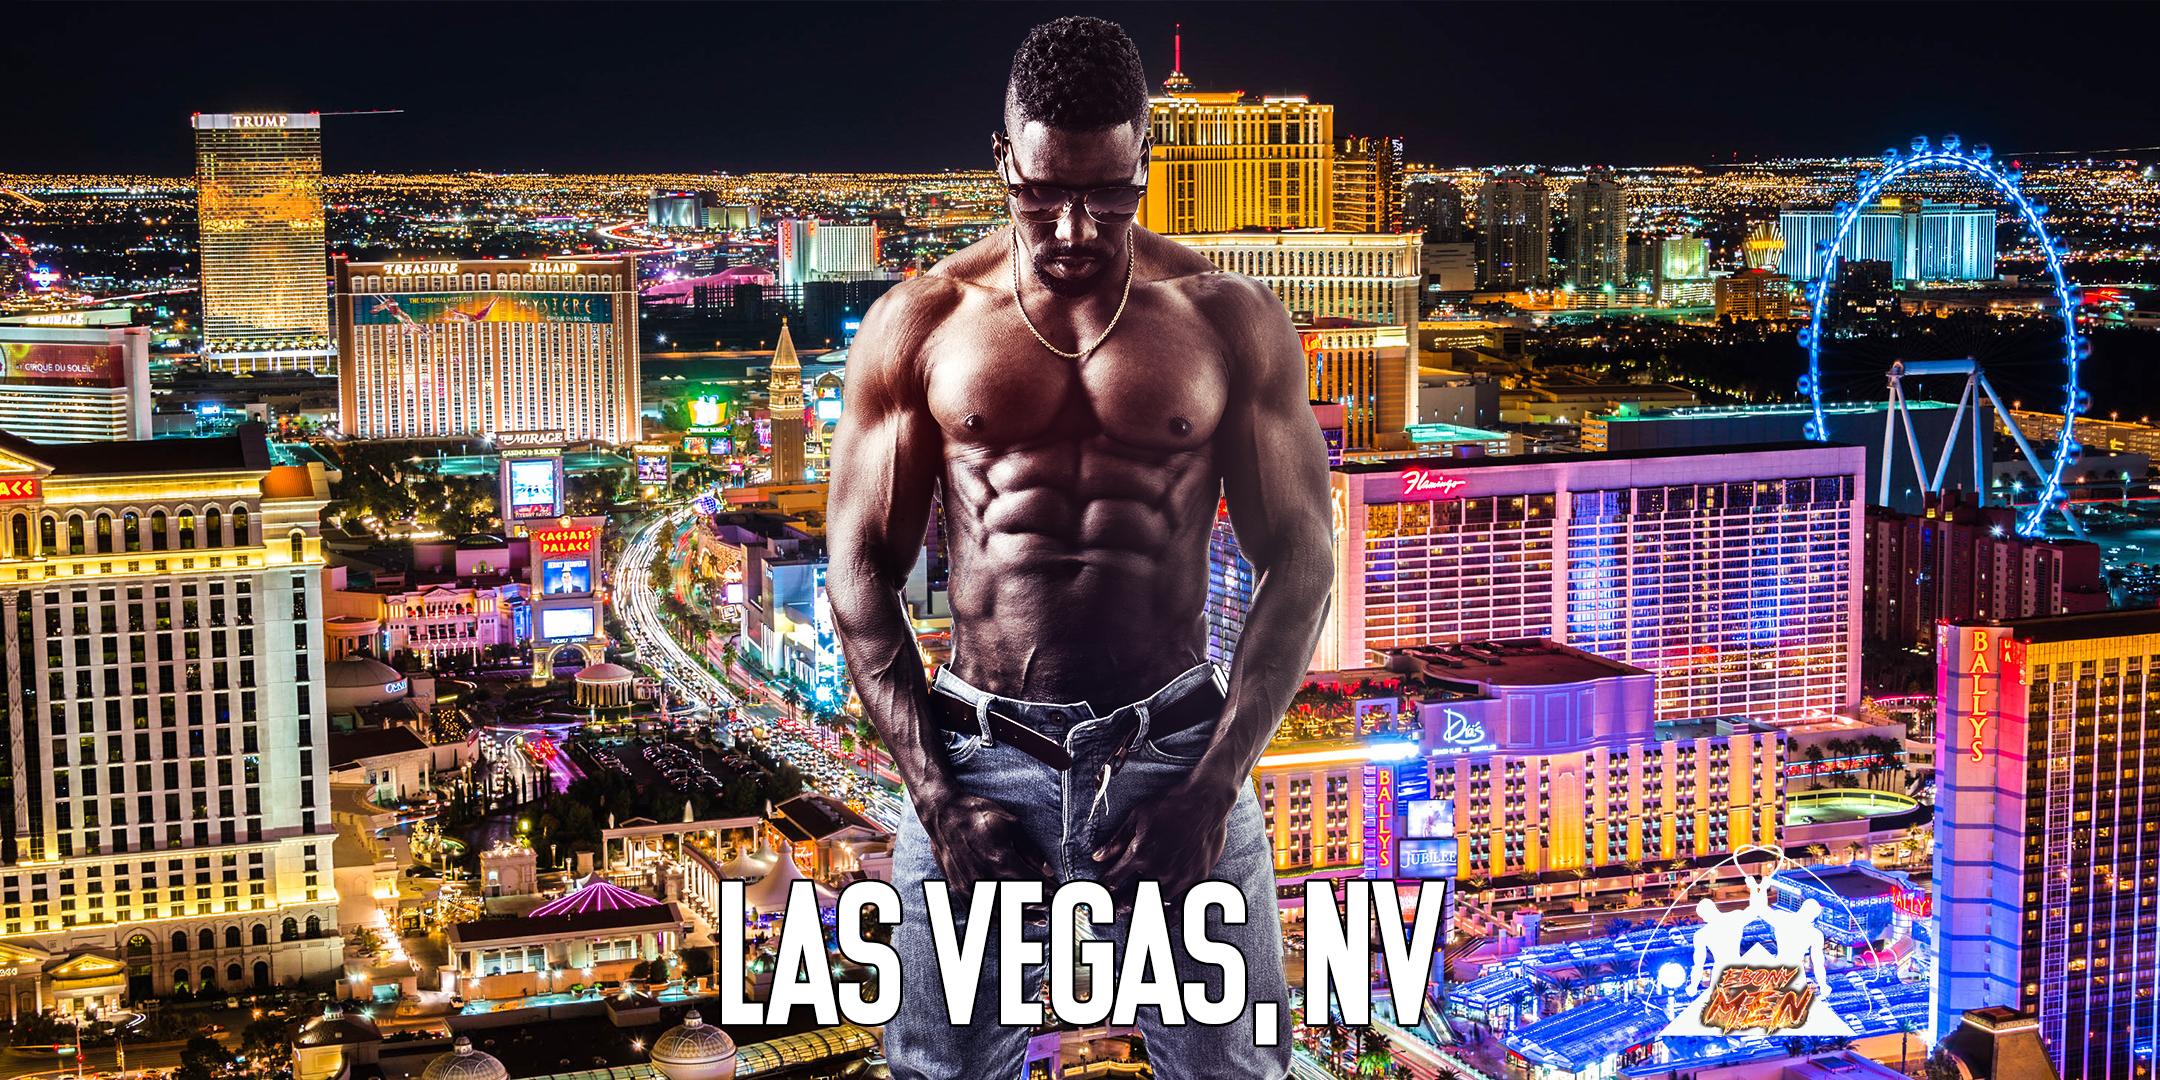 Ebony Men Black Male Revue Strip Clubs & Black Male Strippers Las Vegas